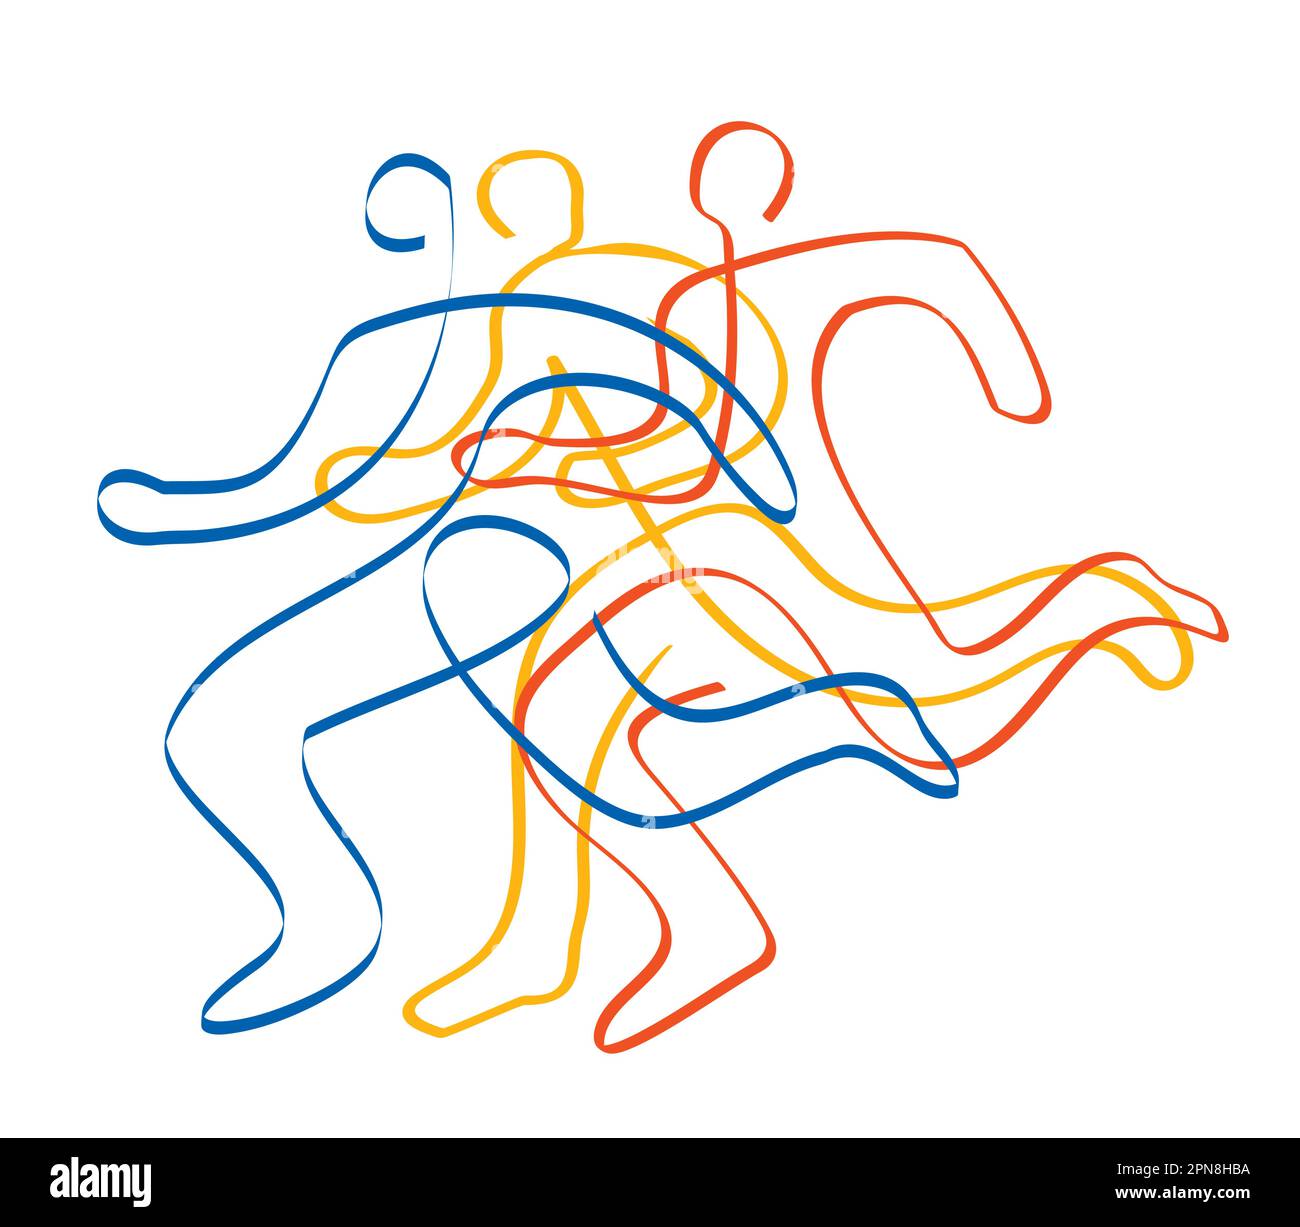 Laufrennen, Marathon, Joggen, Styling. Stilisierte Darstellung von drei Rennwagen. Durchgehende Linienzeichnung. Stock Vektor